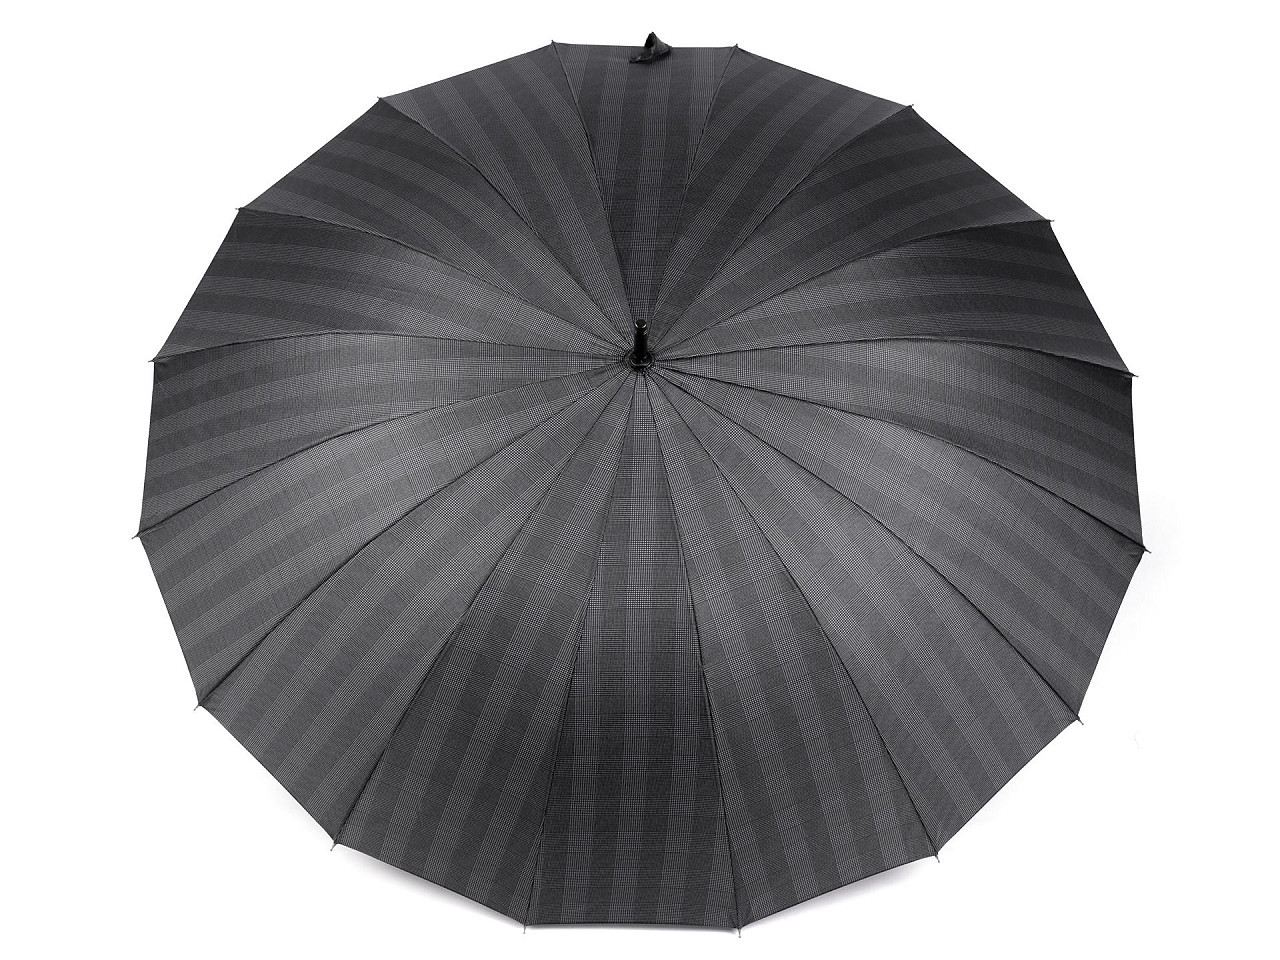 Velký rodinný vystřelovací deštník, barva 4 šedá tmavá káro